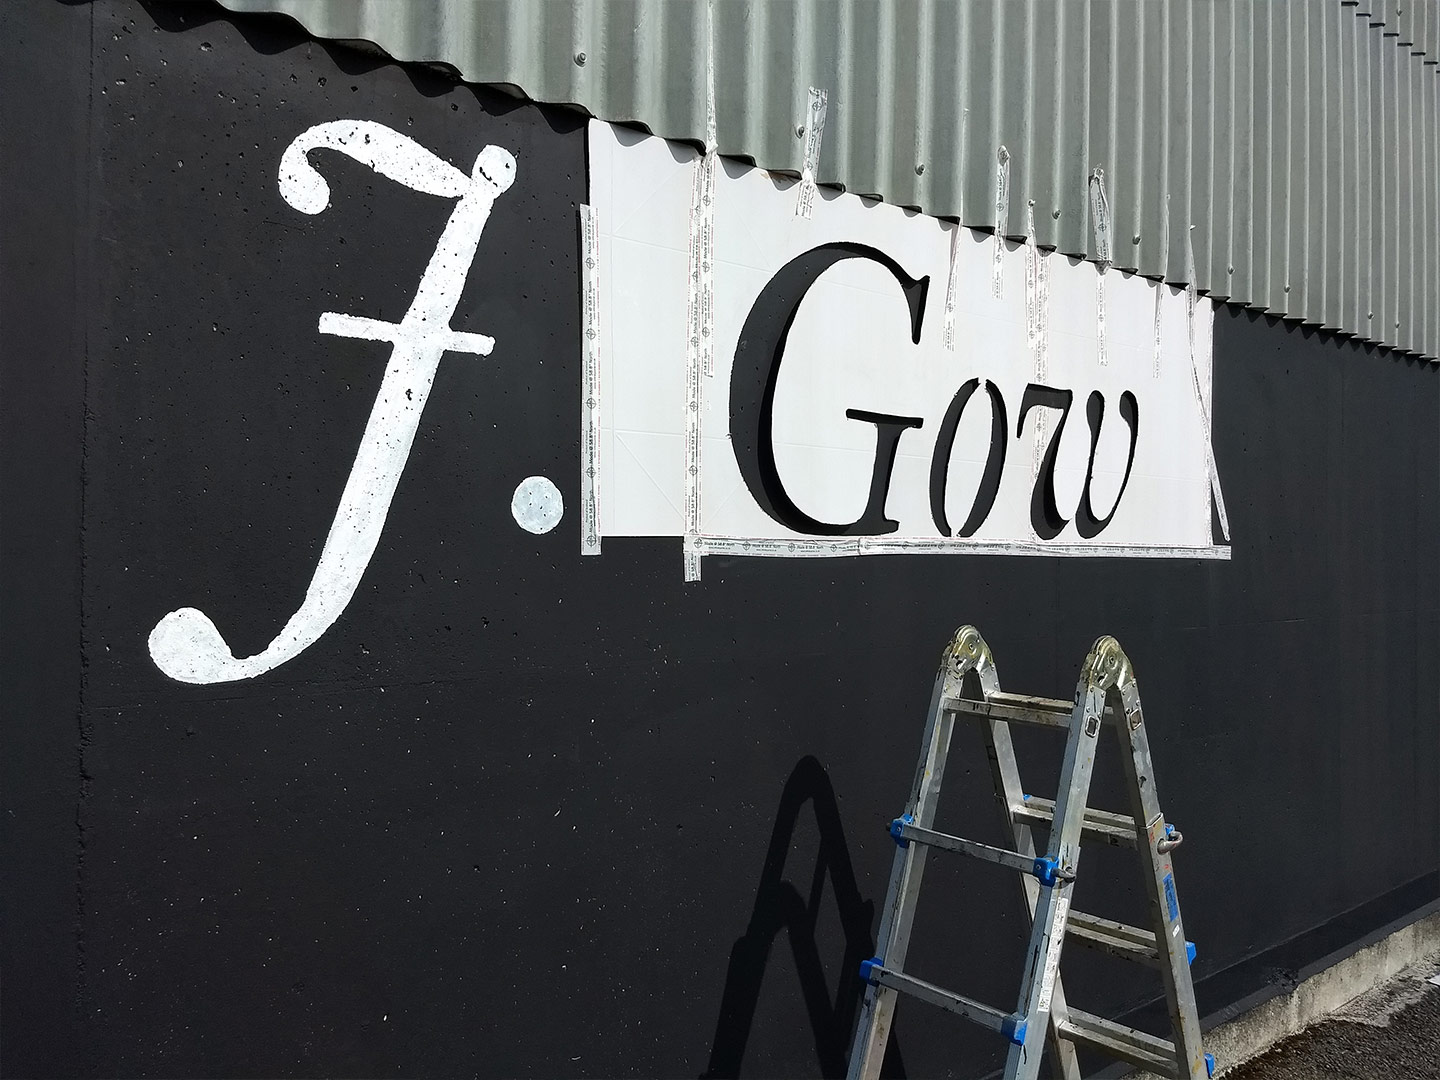 j gow rum distillery being painted